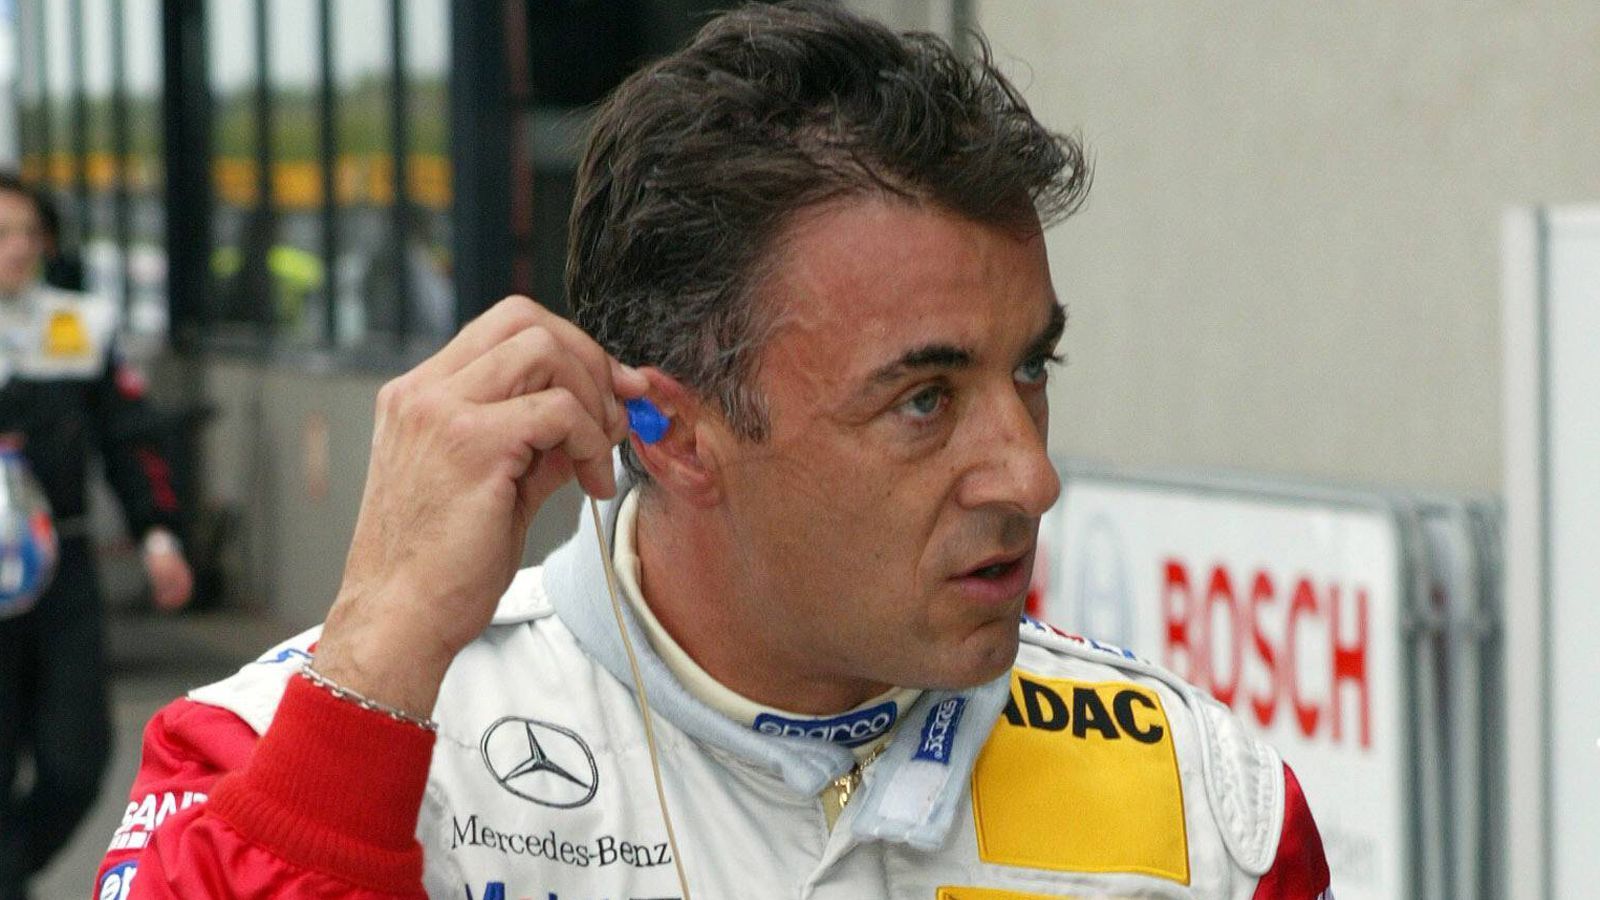 
                <strong>Jean Alesi (201 Formel-1-Rennen)</strong><br>
                Auch wenn er in seiner ganzen Karriere lediglich ein Formel-1-Rennen gewann, zählte Jean Alesi in den 1990er Jahren zu den populärsten Rennfahrern. Von 1989 bis 2001 war er stets in der Formel 1 vertreten. Im Jahre 2002 ging er in die DTM, wo er aufgrund seines bekannten Namens sofort zu den Publikumslieblingen zählte. Der Franzose blieb dieser Rennserie bis 2006 erhalten und holte immerhin vier Siege.
              